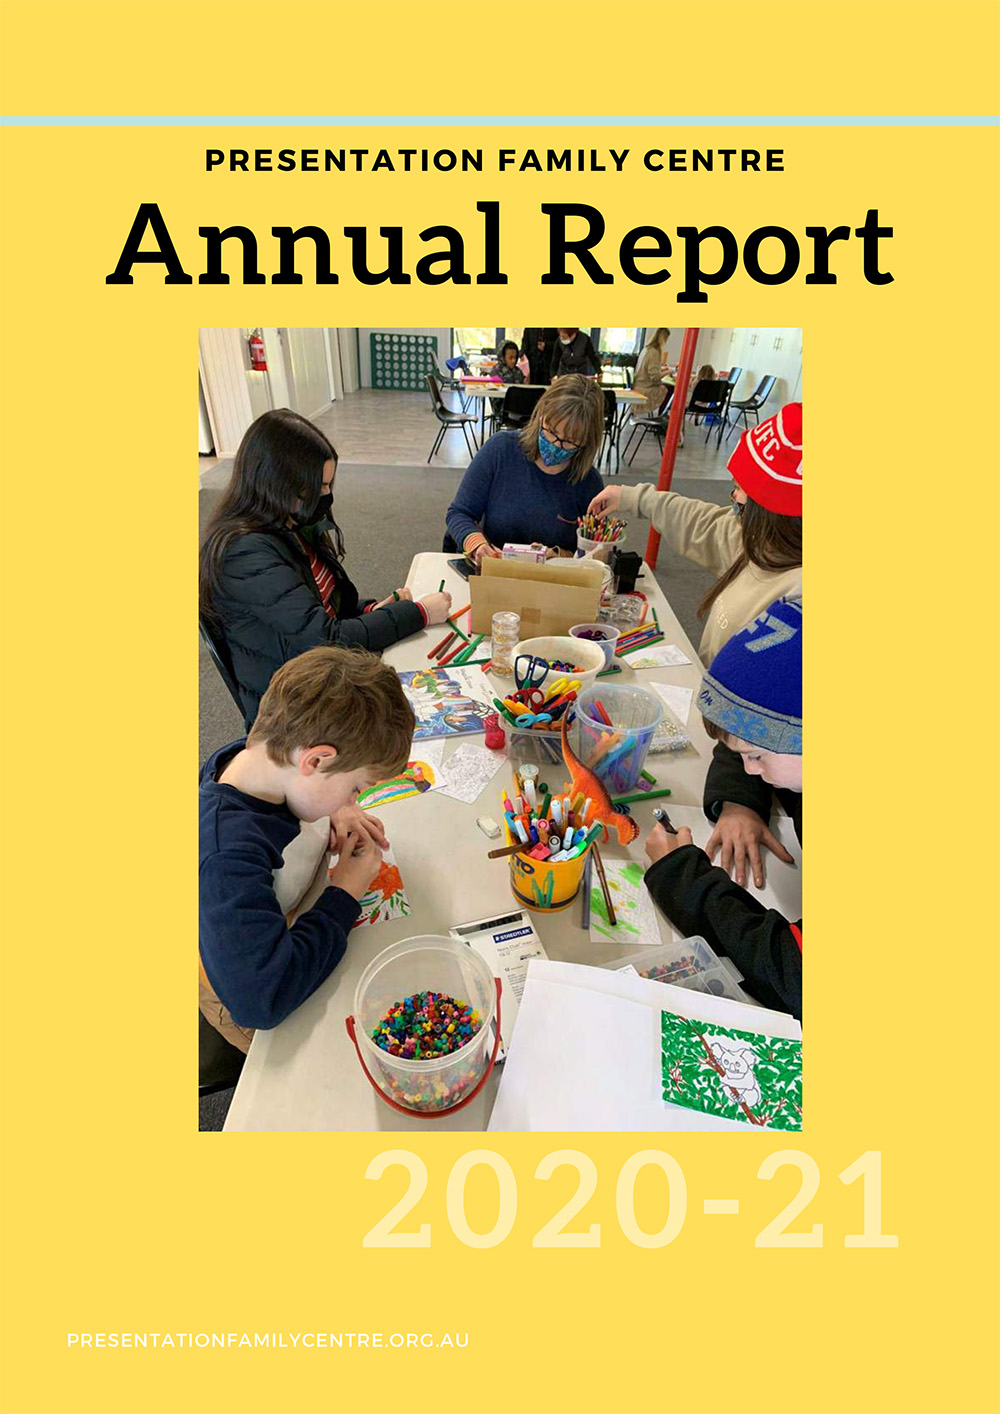 Presentation family Centre Annual Report 2020-2021